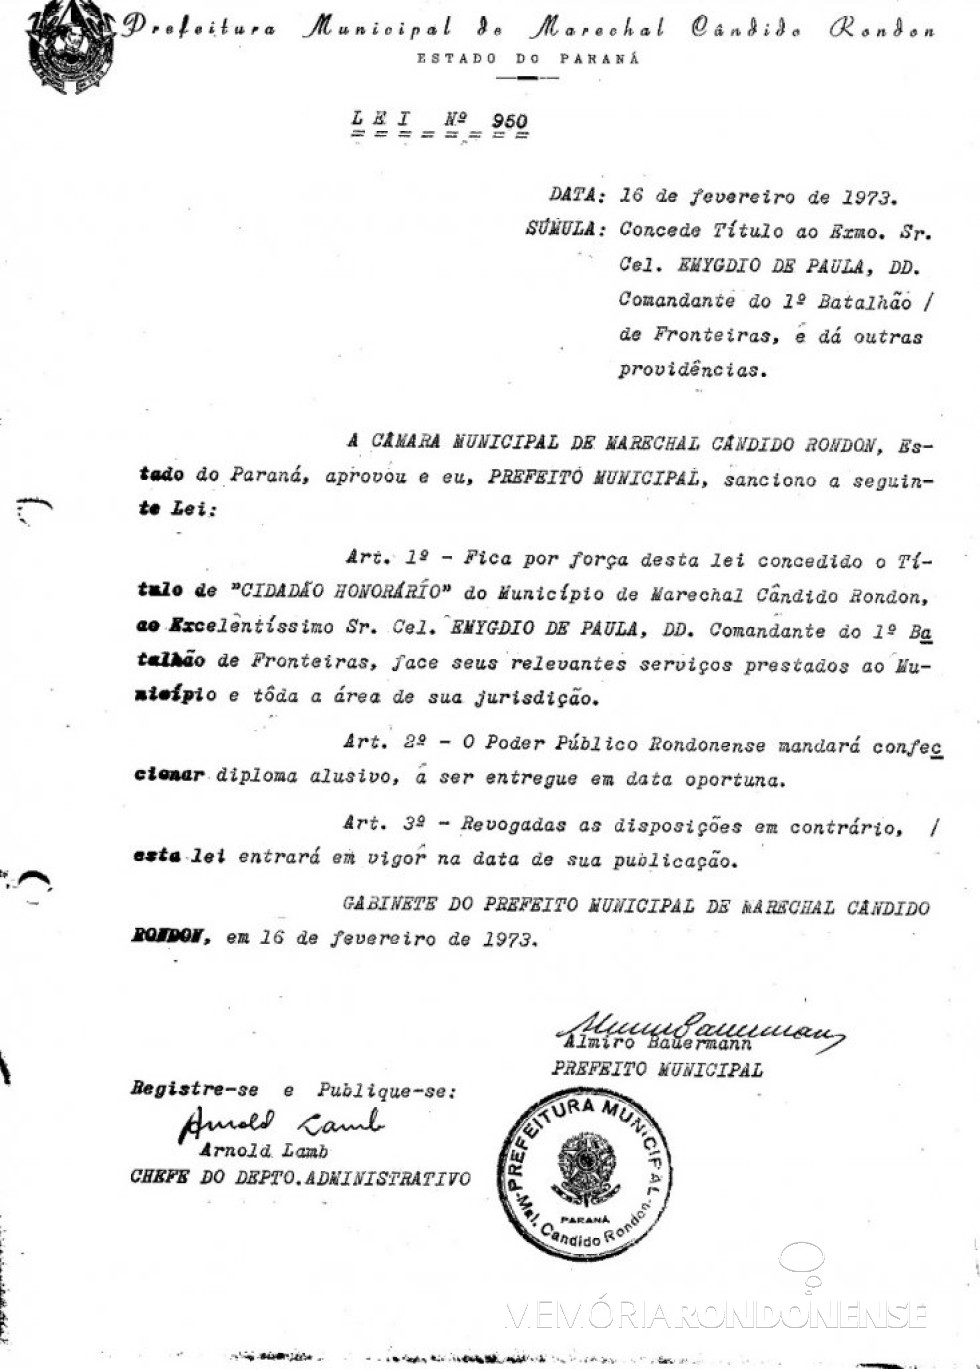 || Cópia da Lei que concedeu o título de Cidadão Honorário de Marechal Cândido Rondon ao Cel. Emygdio de Paula, em janeiro de 1973.
Imagem: Acervo Câmara Municipal de Marechal Cândido Rondon - FOTO 3 -